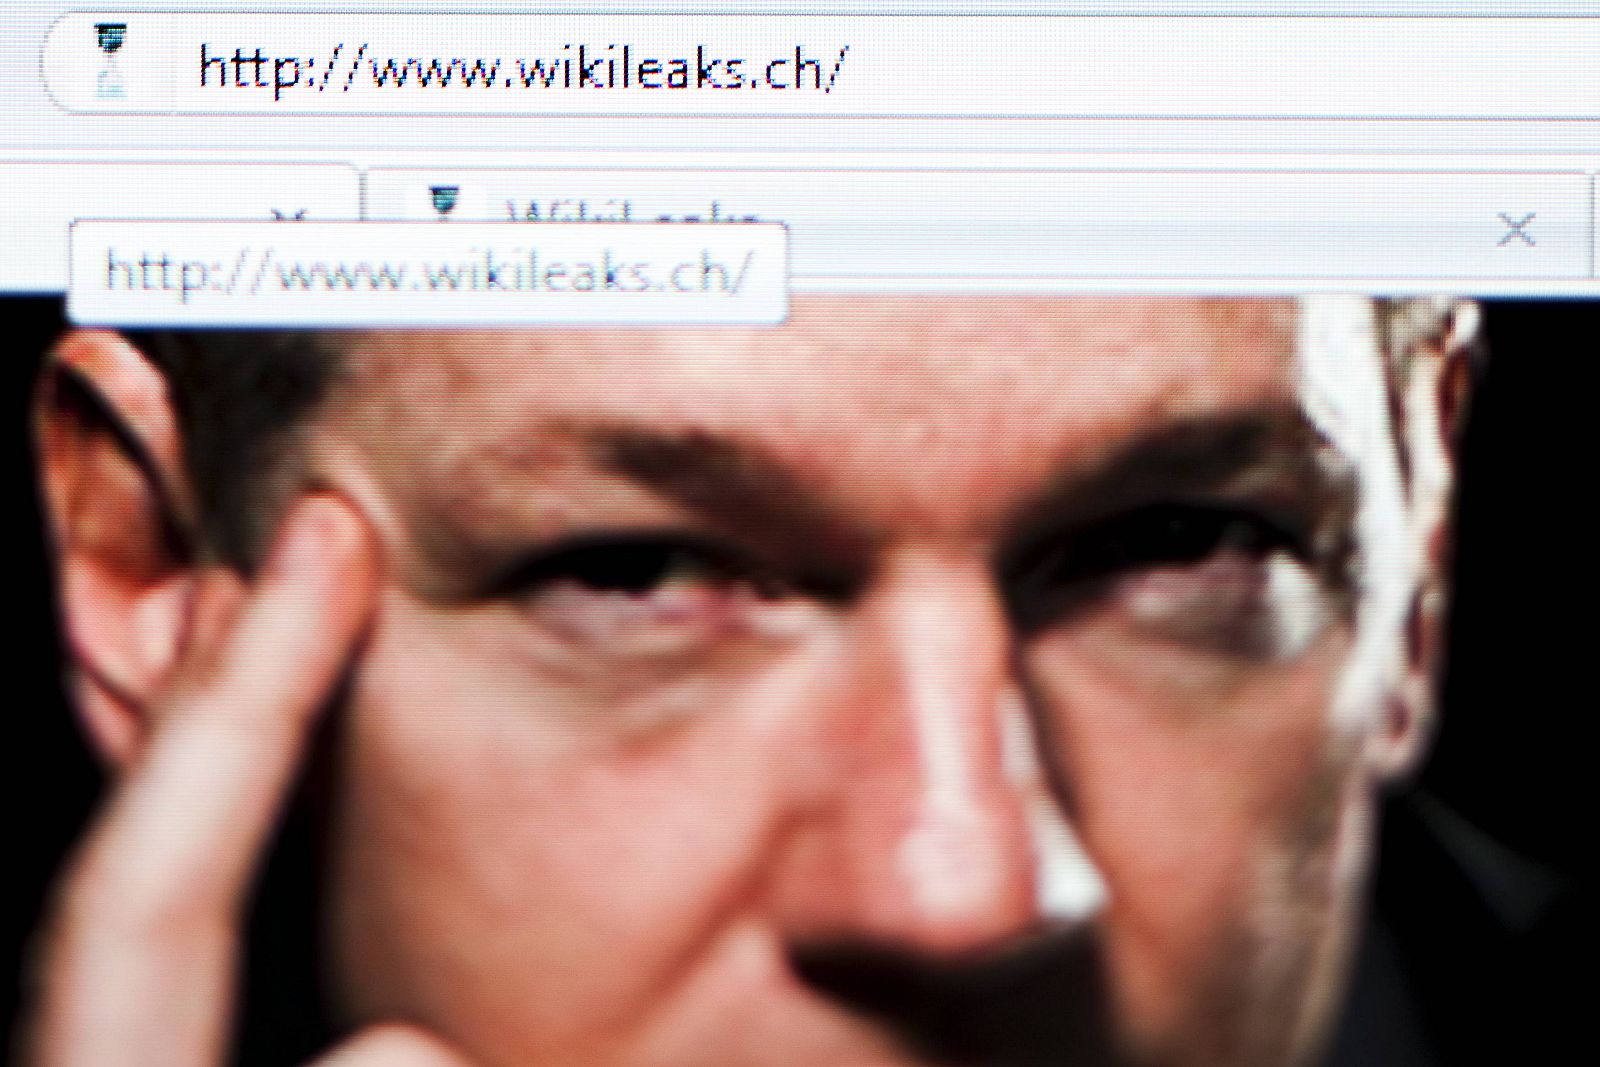 El fundador de Wikileaks, Julian Assange, se encuentra en paradero desconocido.